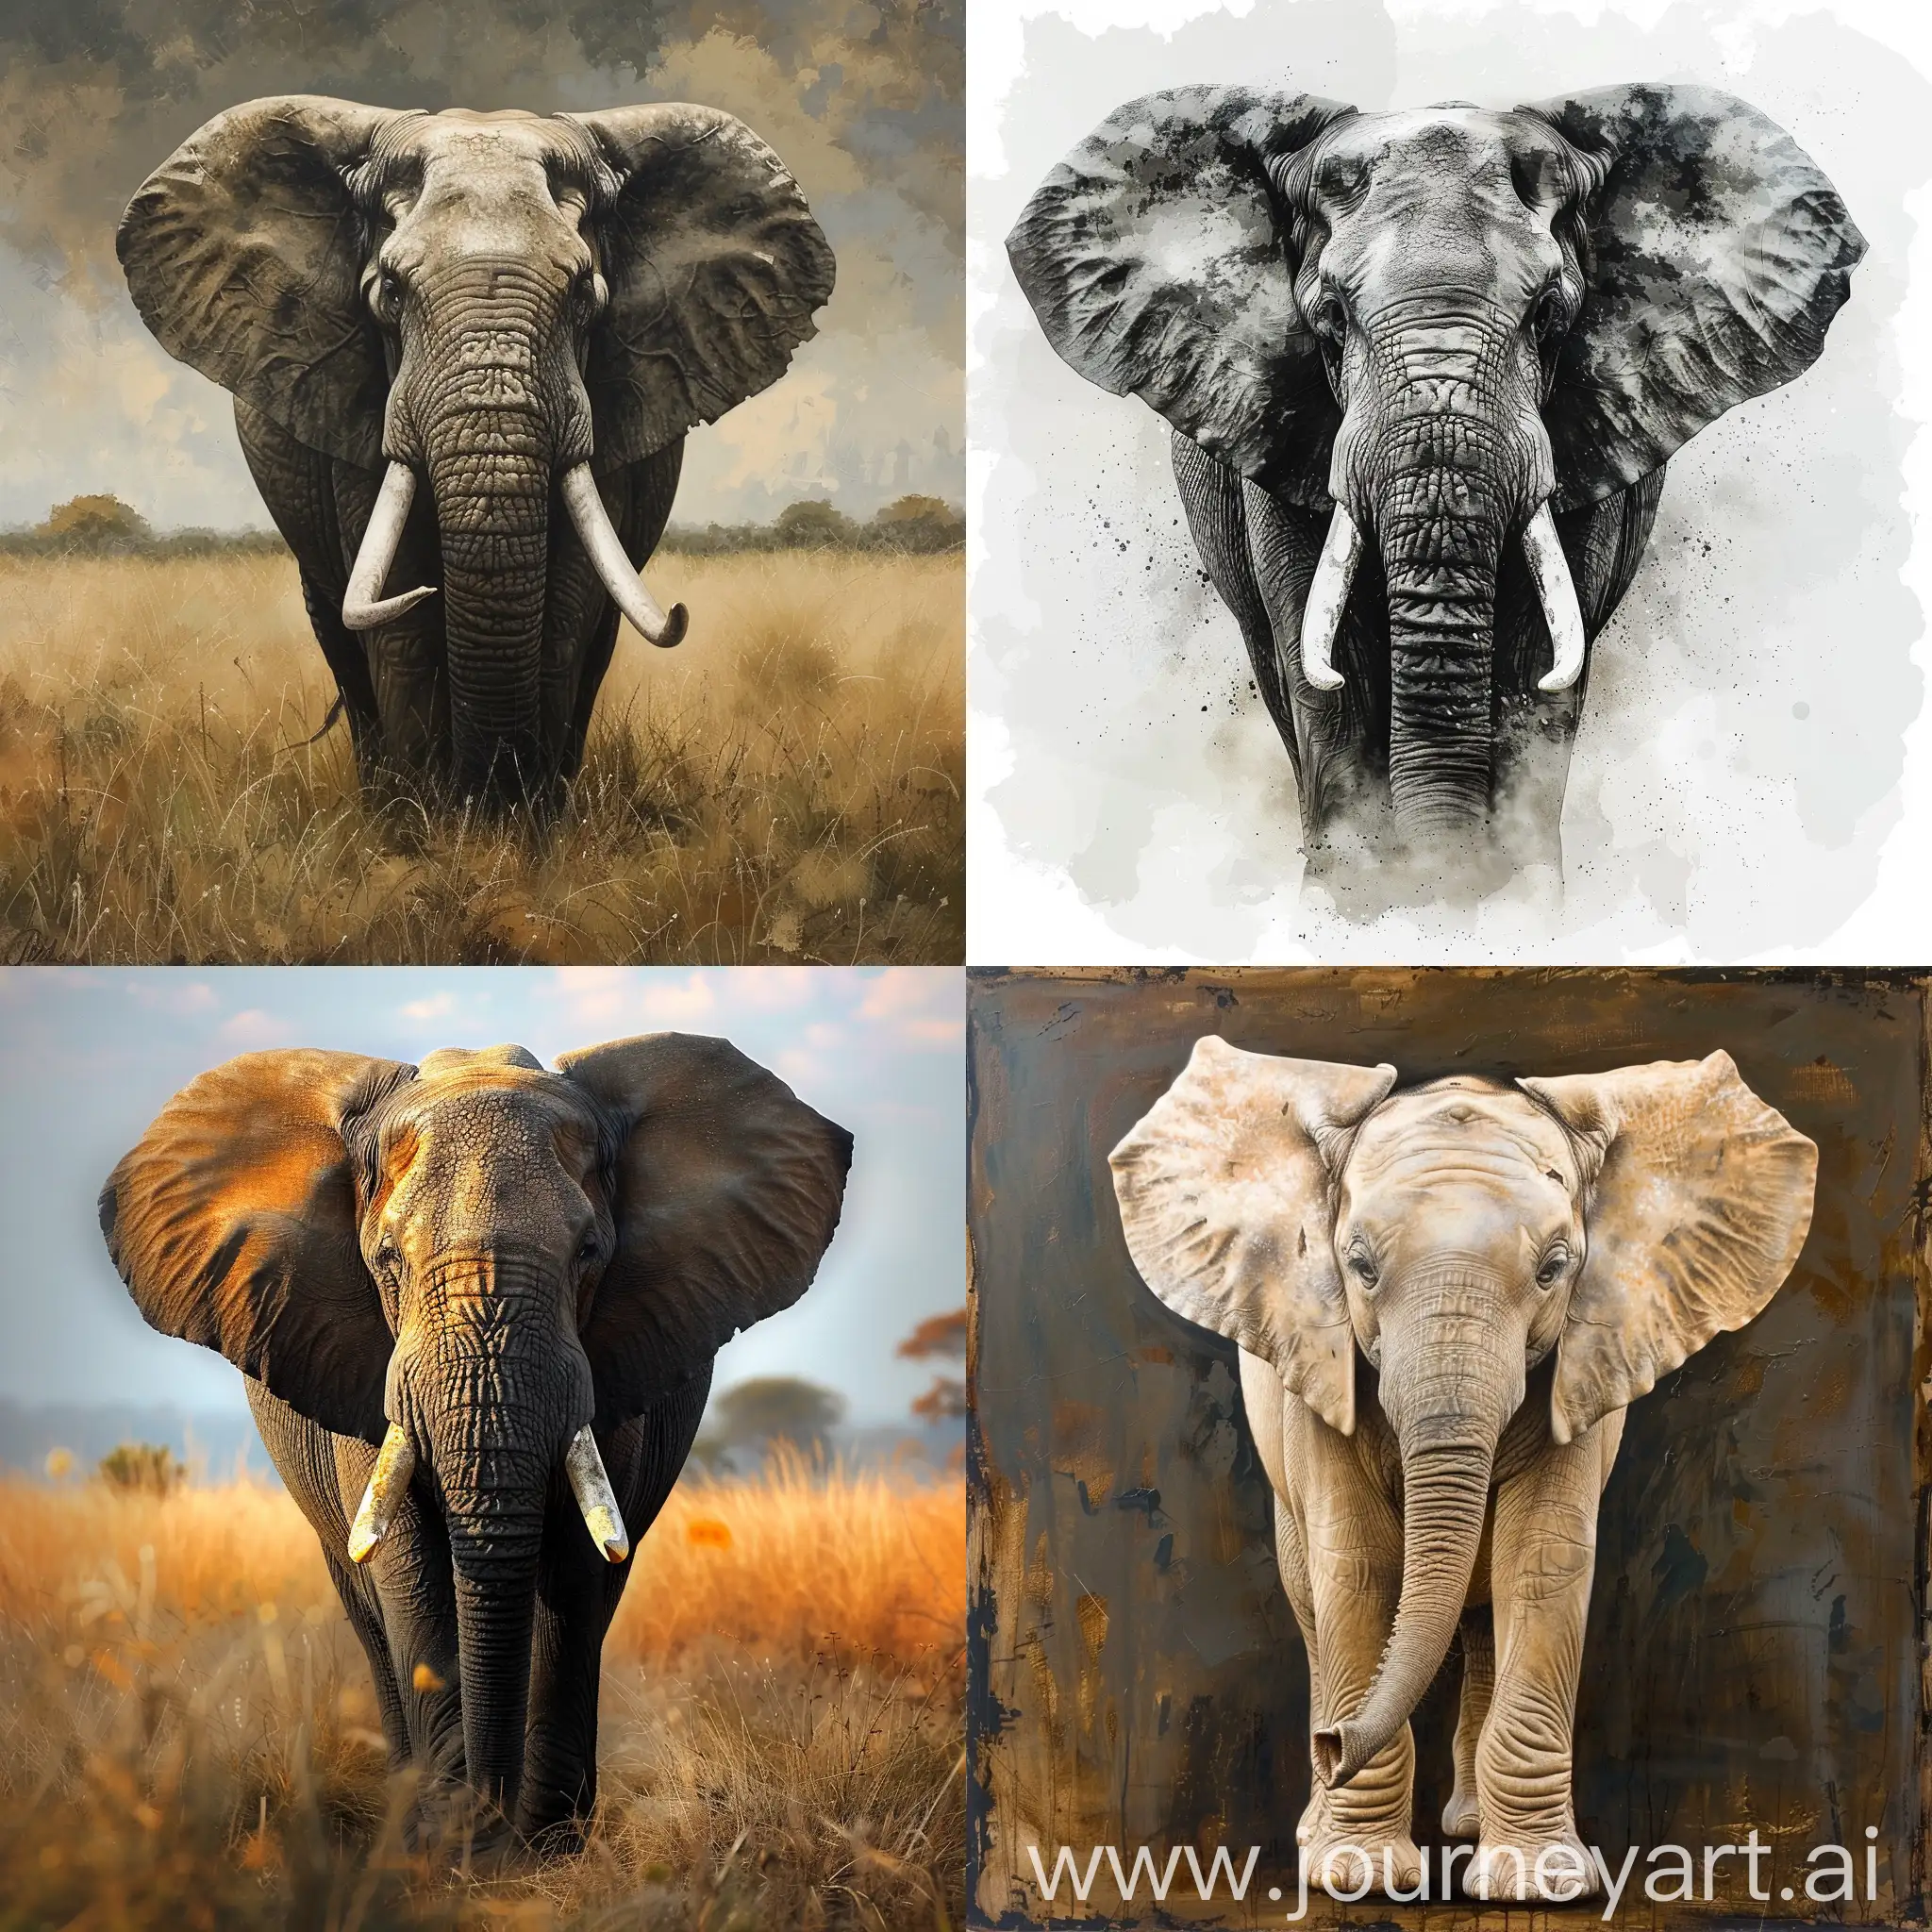 Majestic-Elephant-Portrait-with-Vibrant-Colors